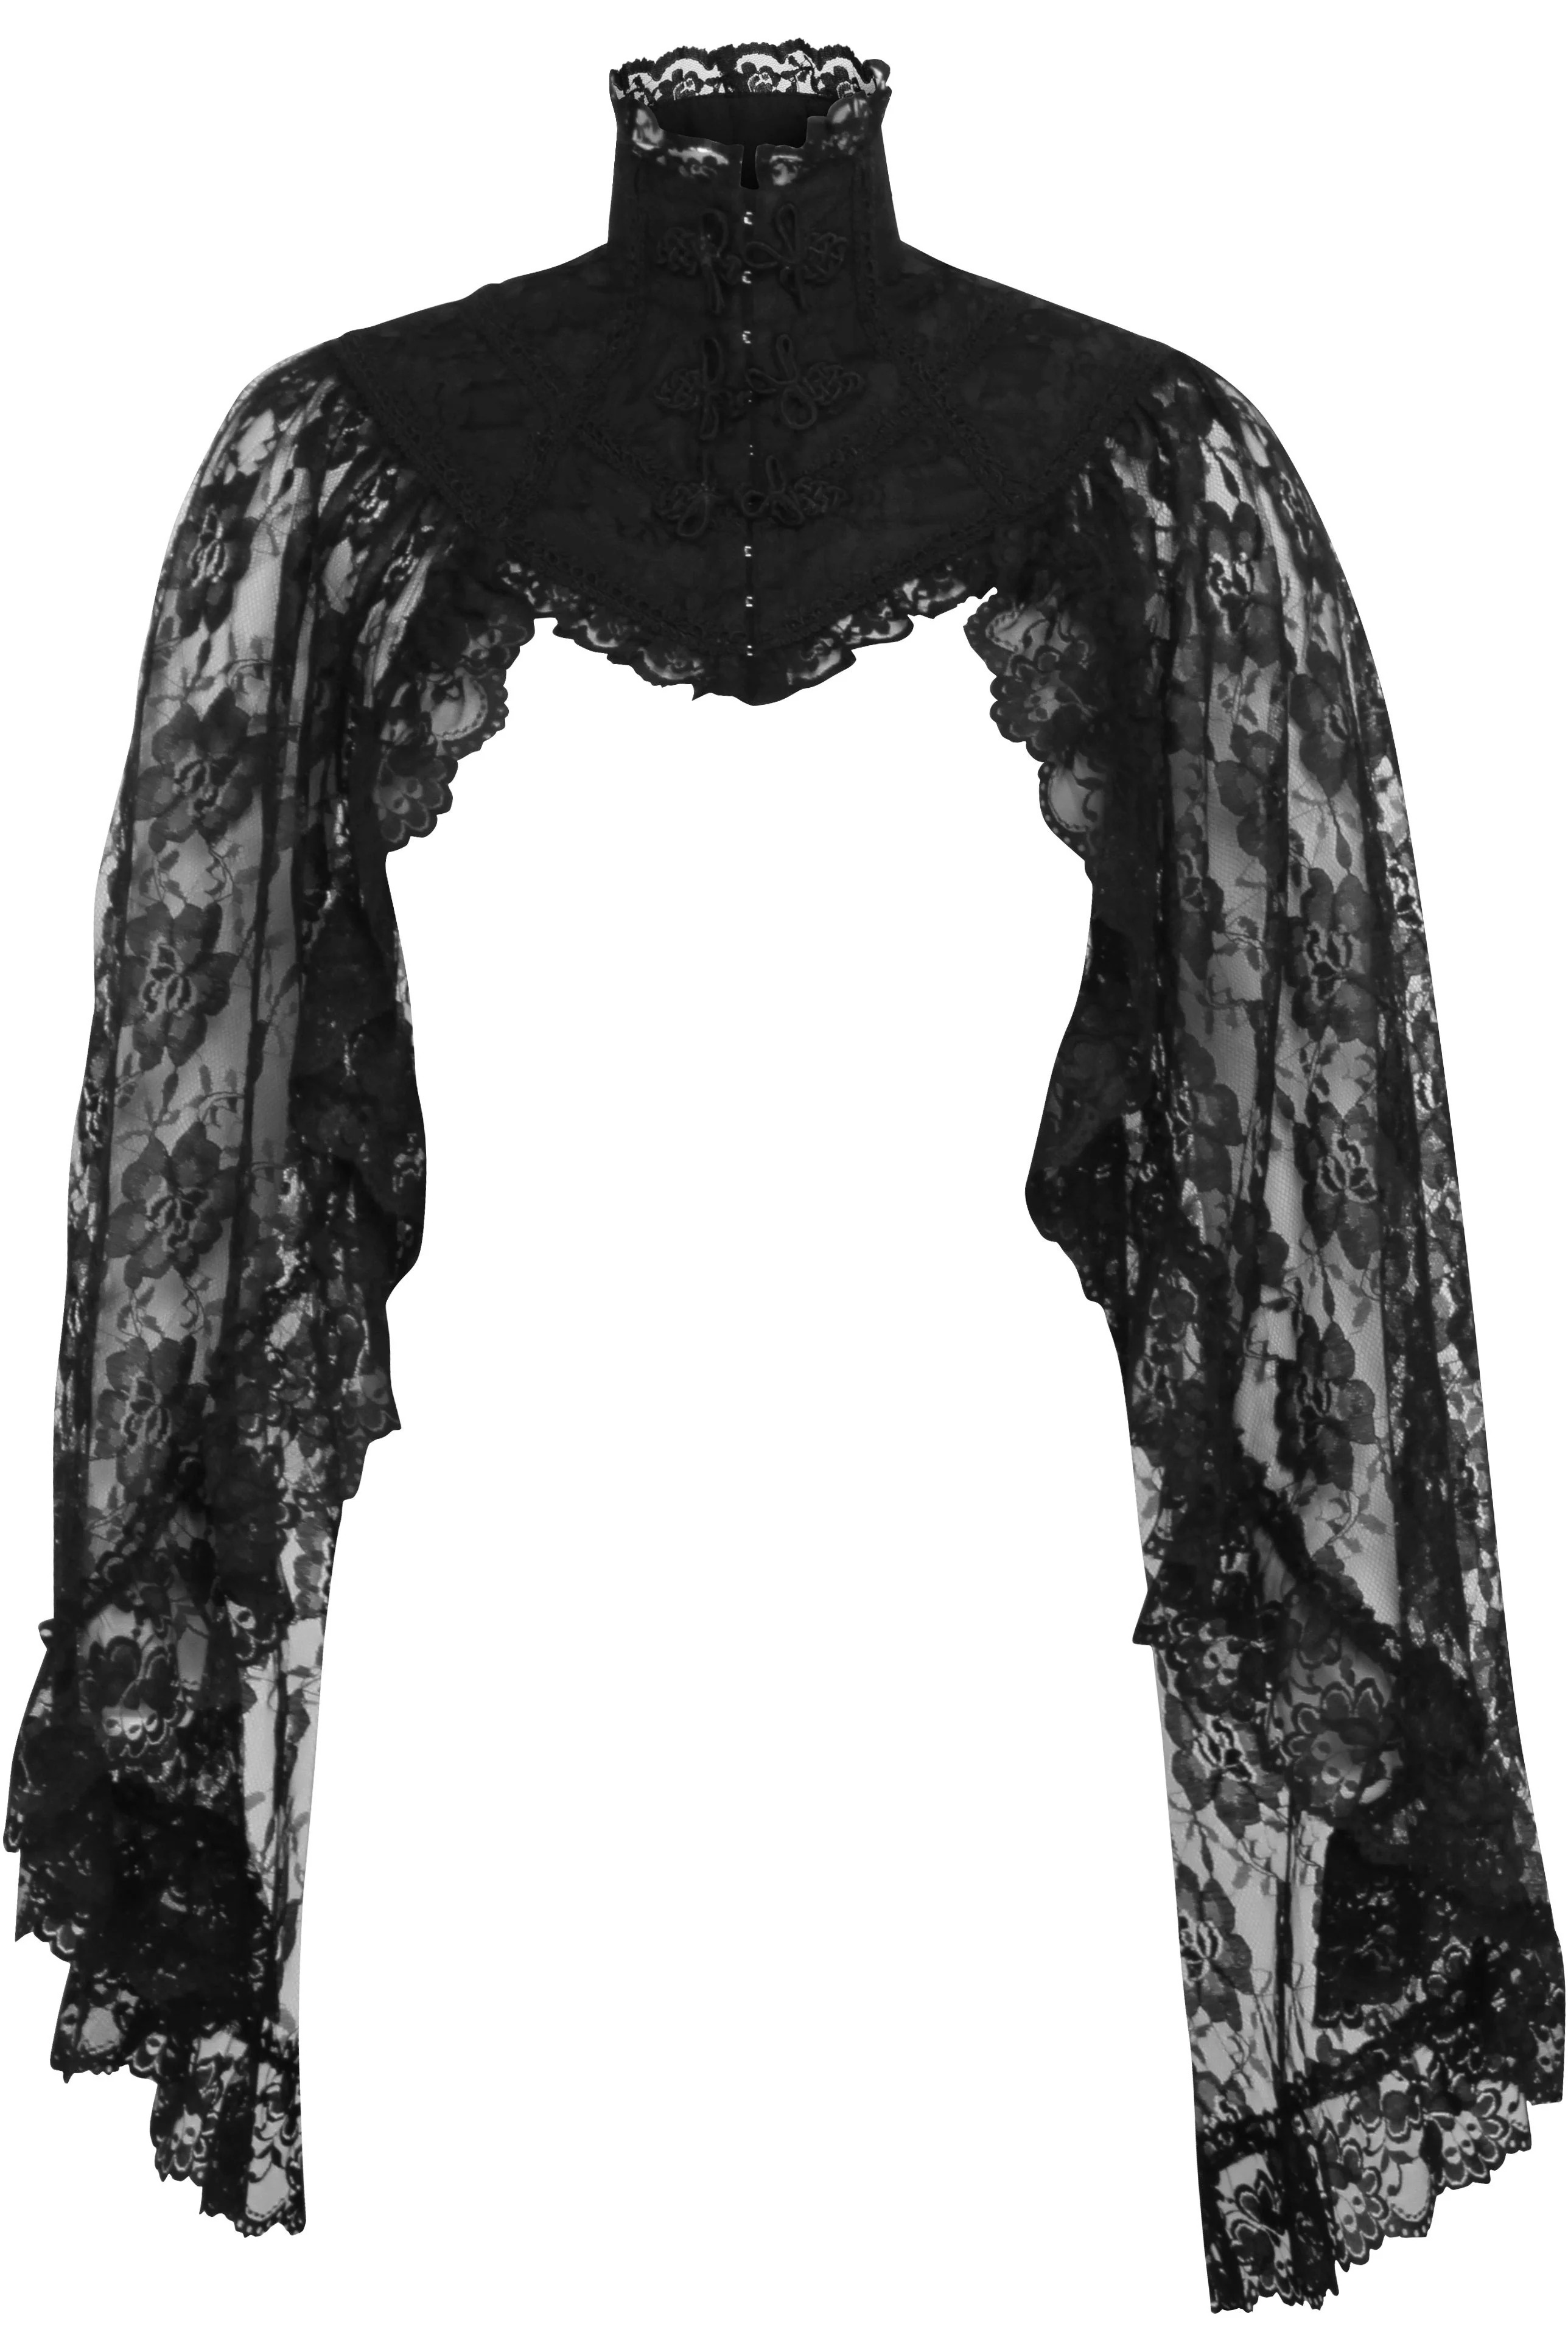 Adult Black Lace Sleeved Bolero Women Jacket